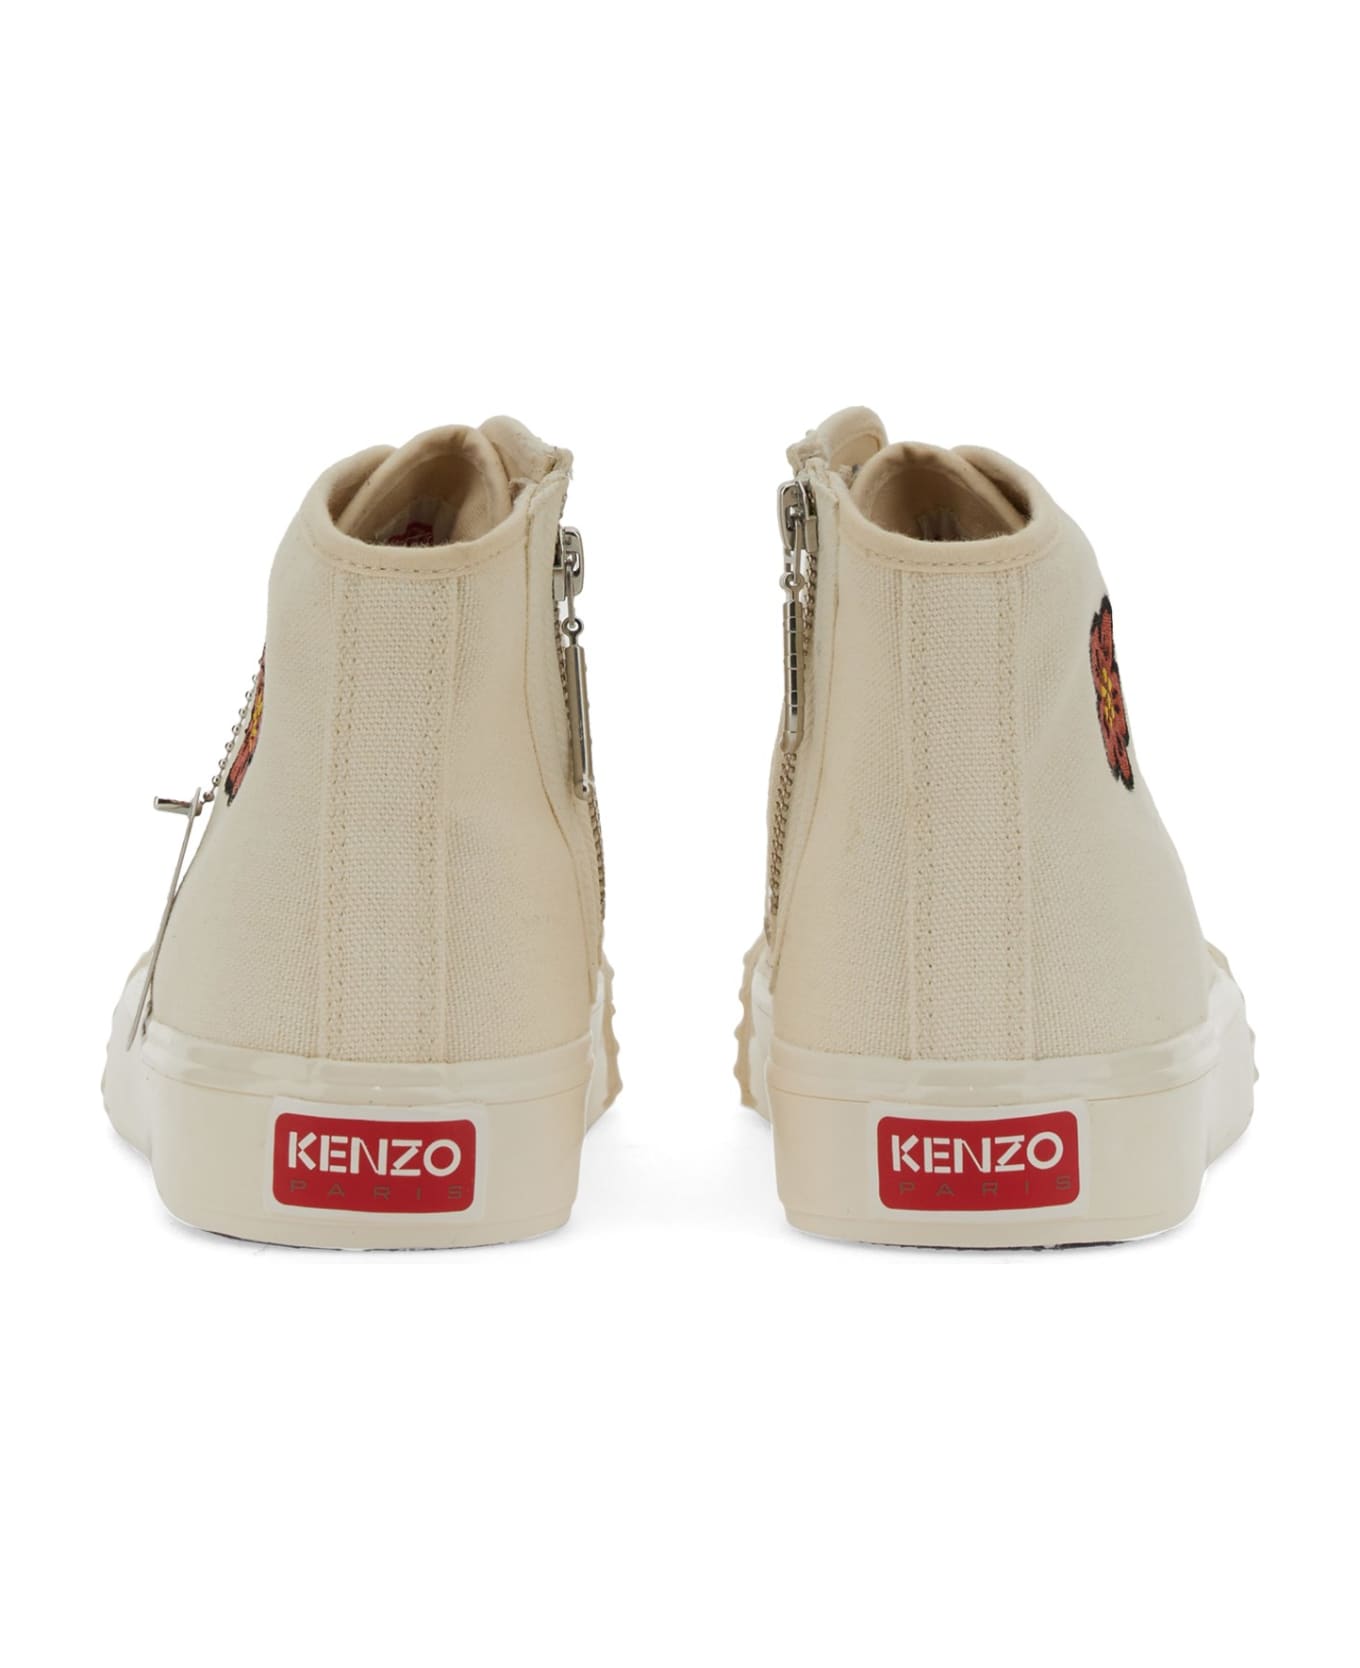 Kenzo School High-top Sneakers - Ivory